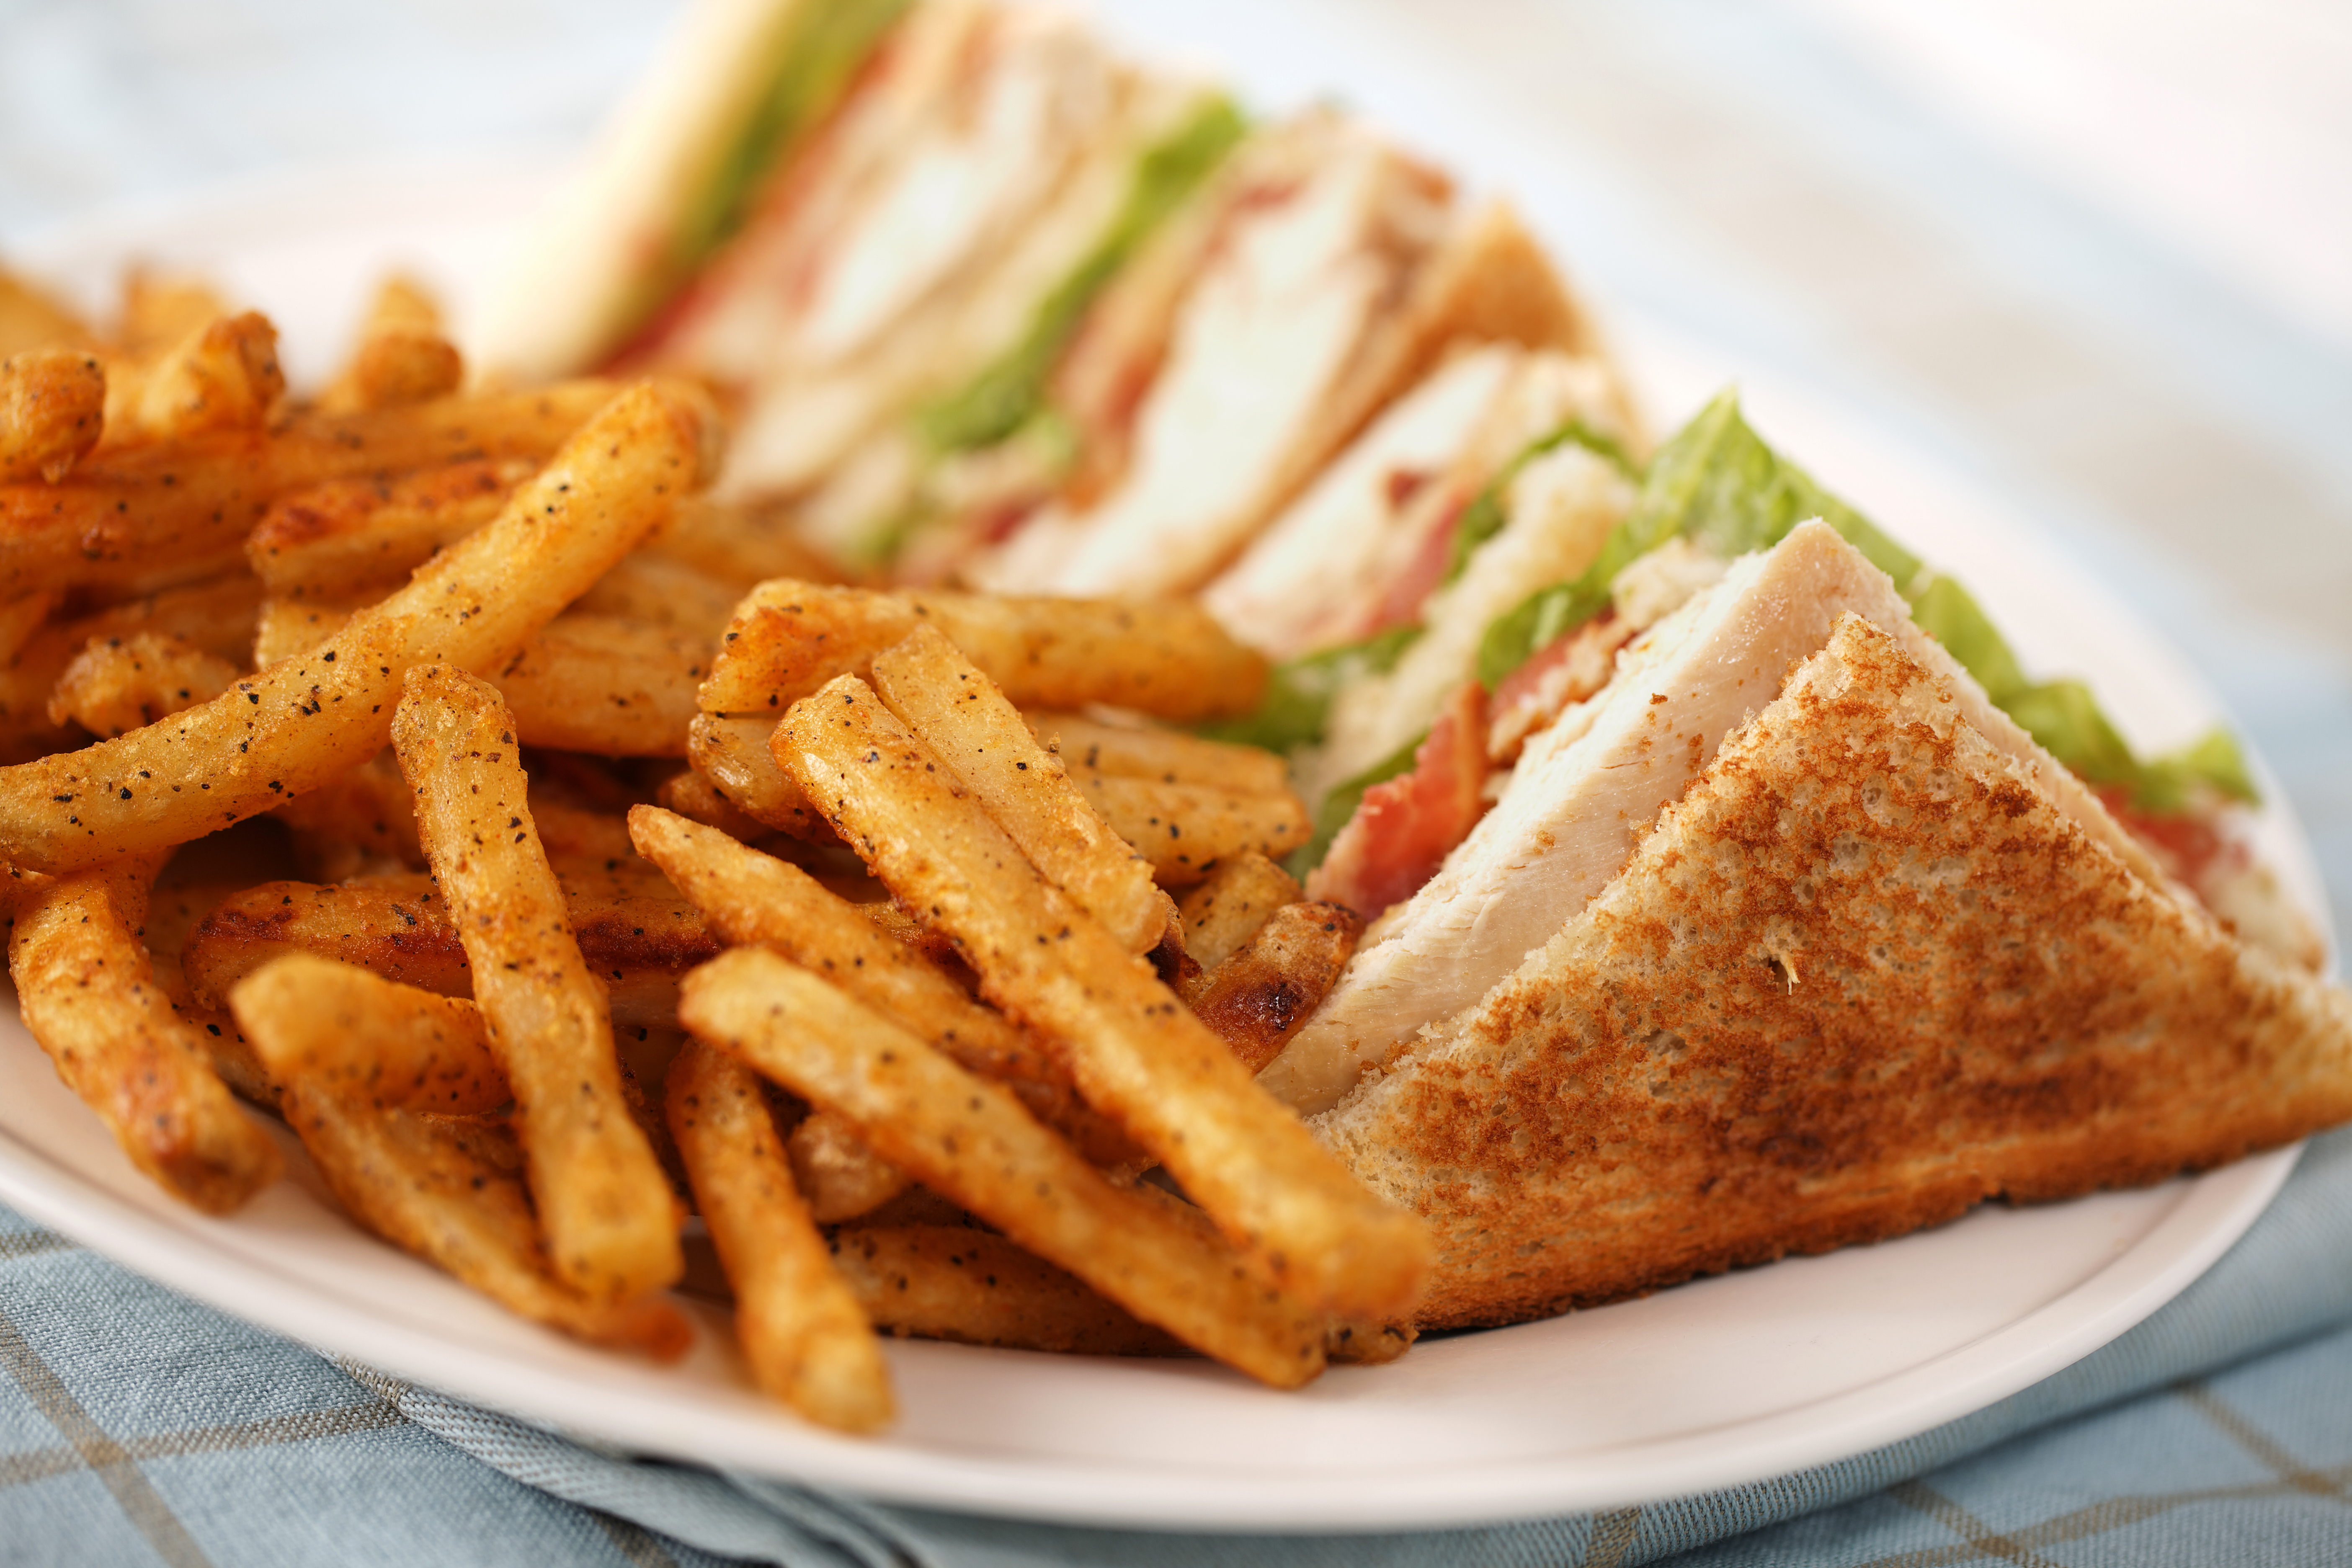 Клаб сэндвич - классический рецепт в домашних условиях с фото, пошагово